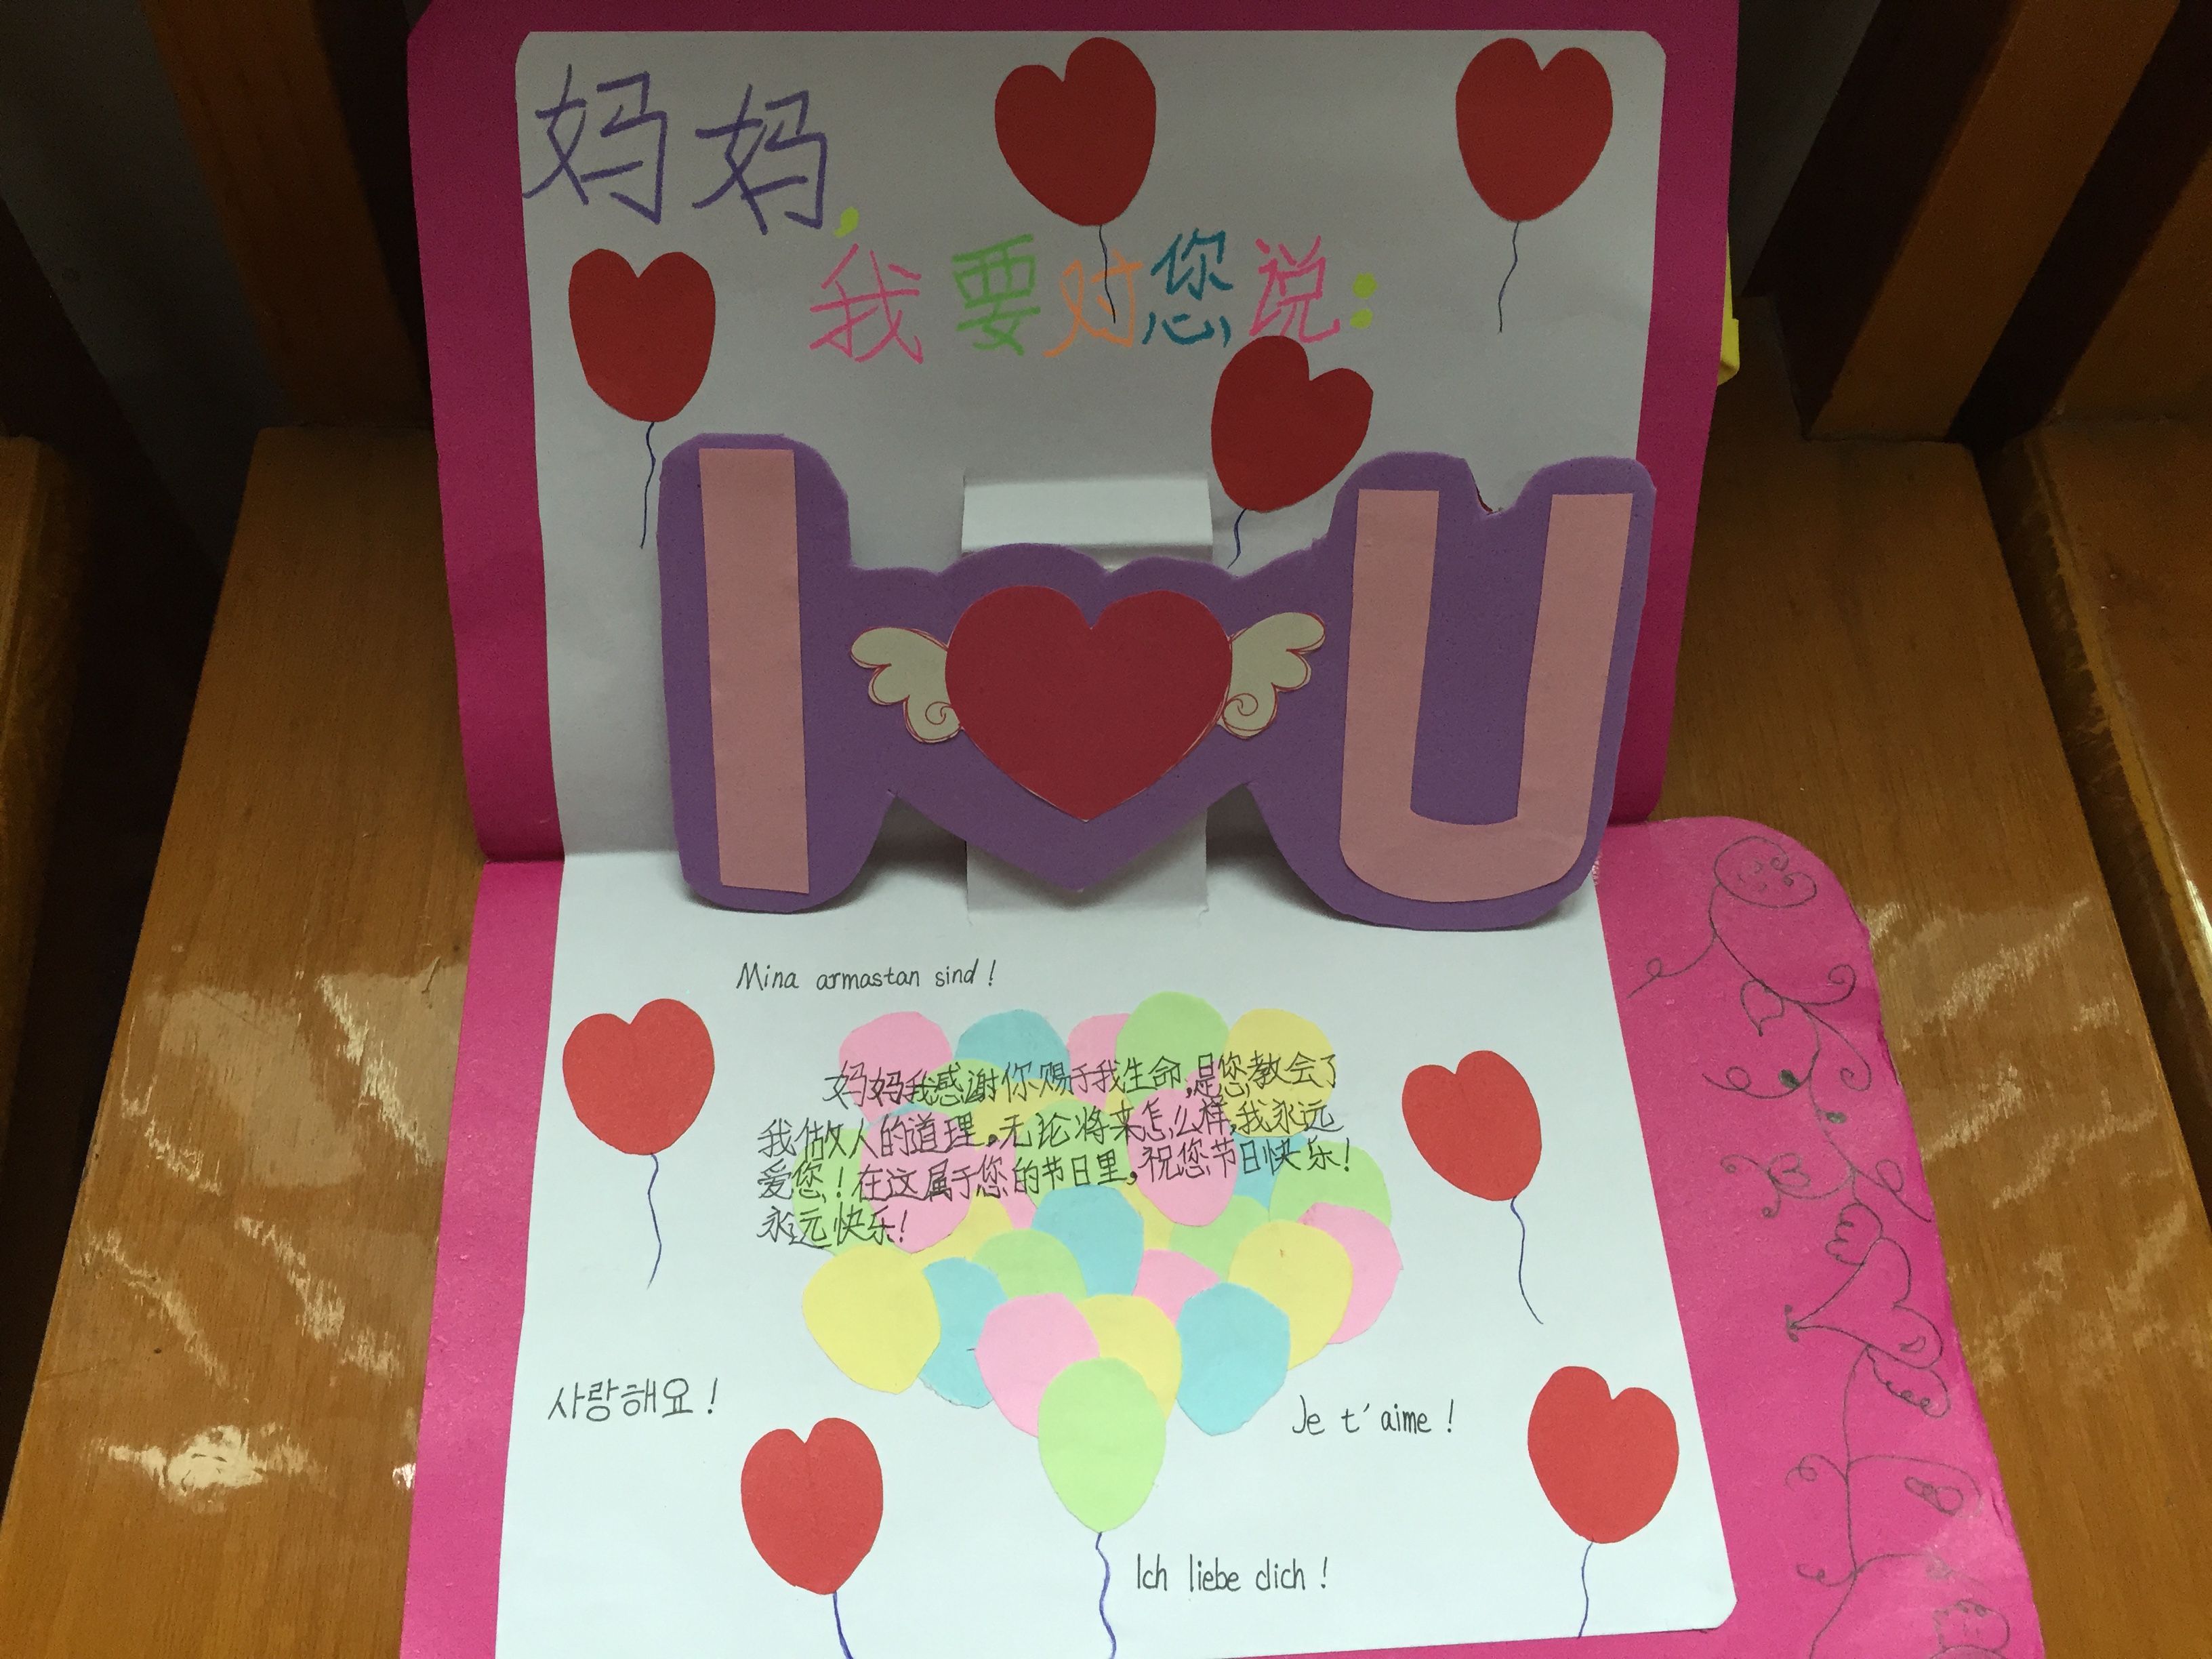 粉紫色植物女孩可爱妇女节分享中文贺卡 - 模板 - Canva可画